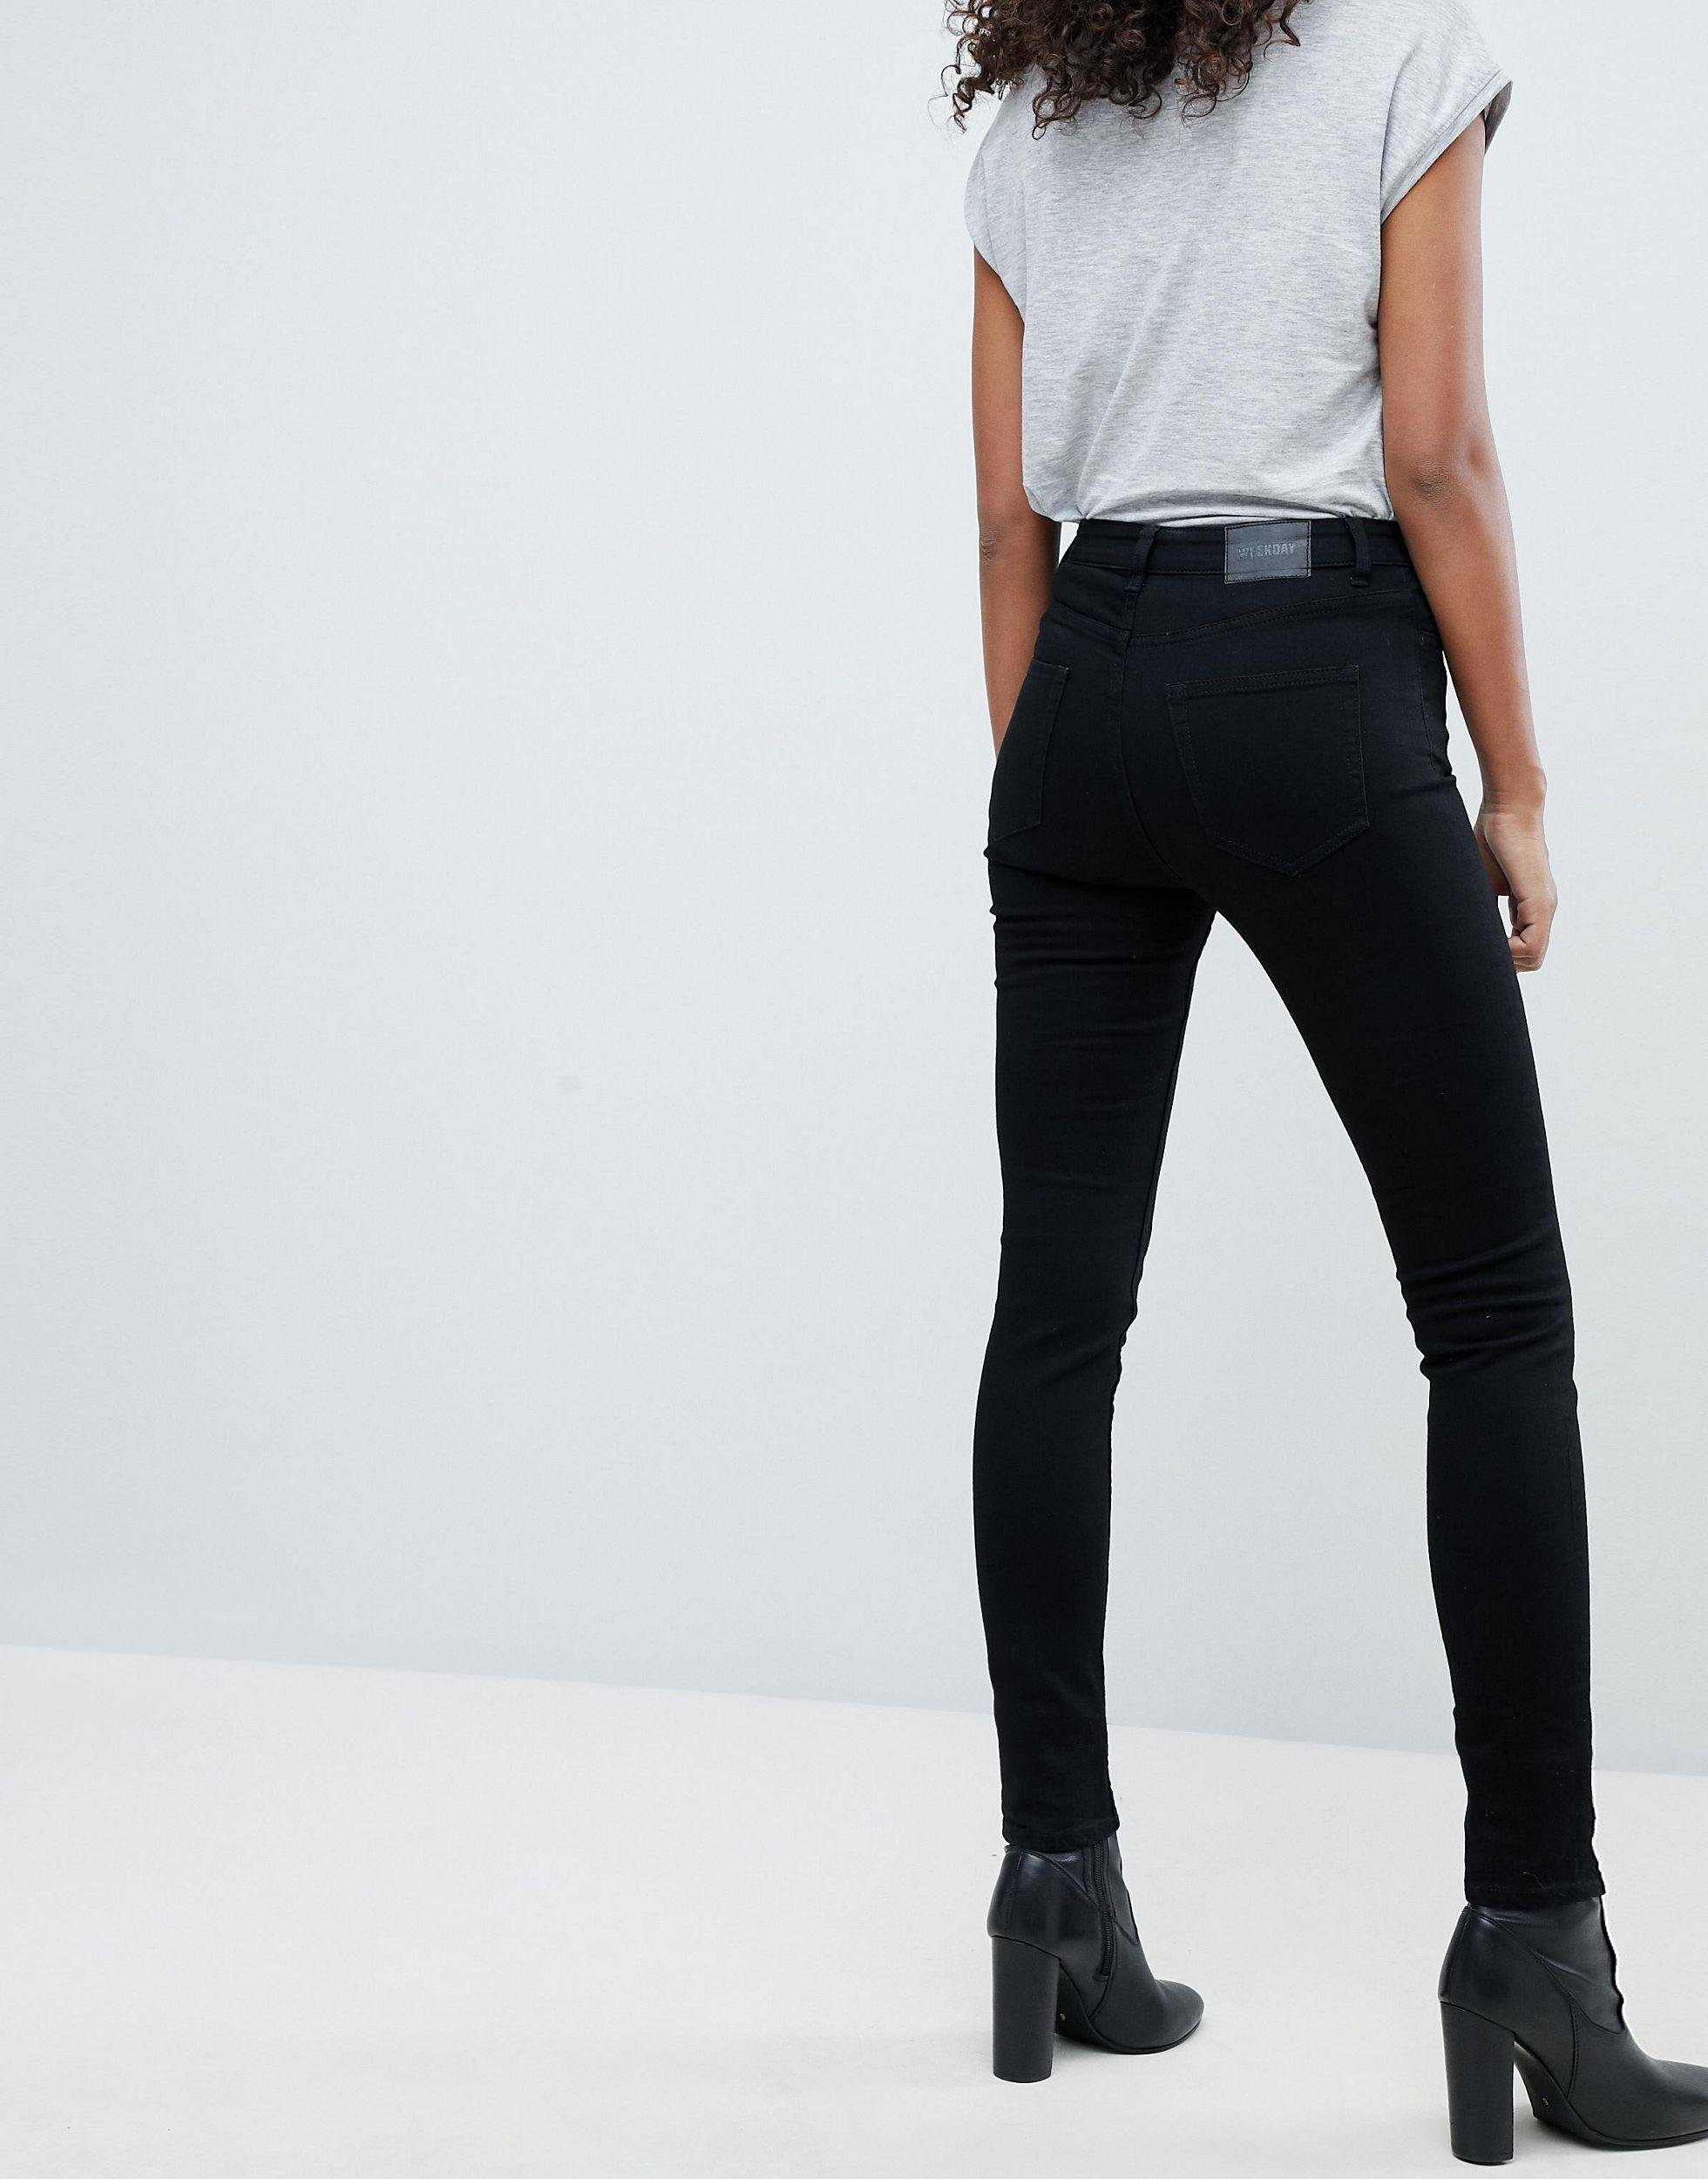 Черные джинсы женские с завышенной талией с чем носить